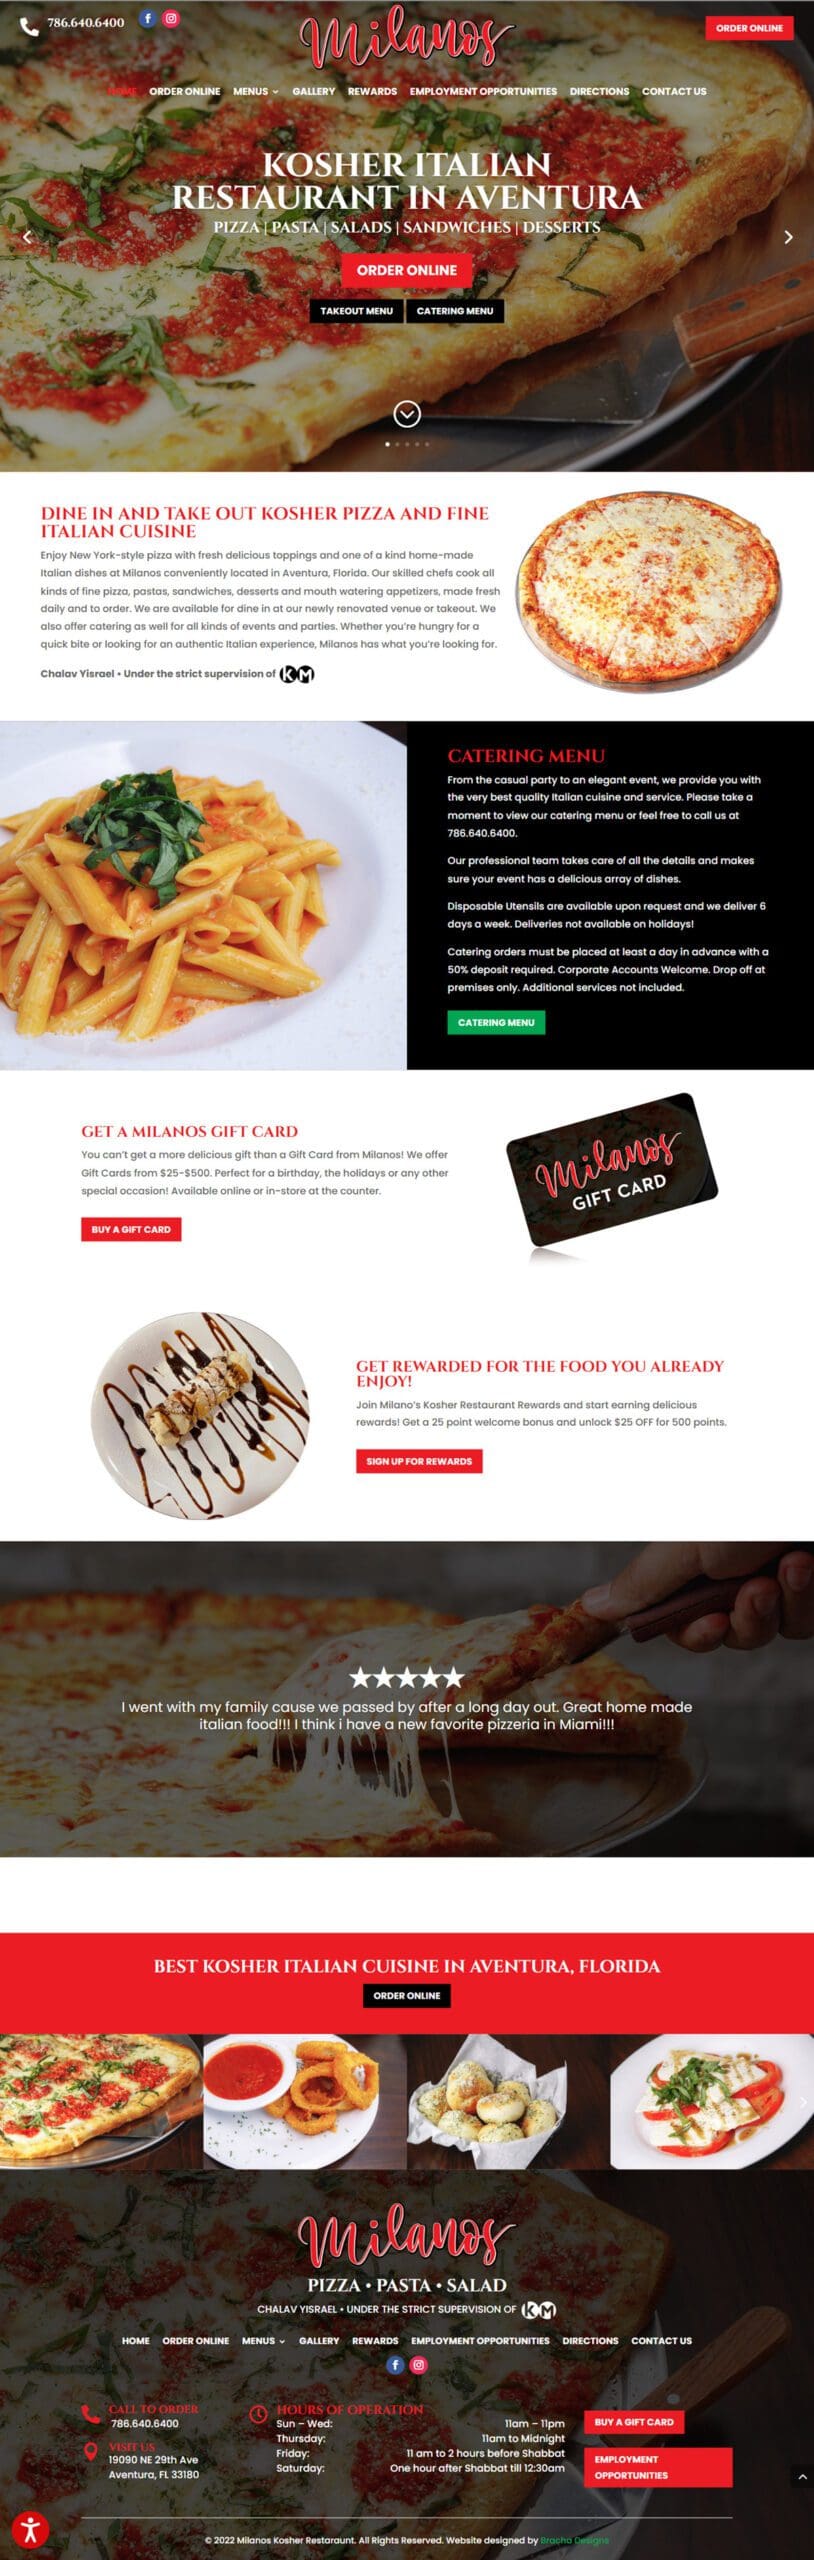 Kosher Italian Restaurant Website